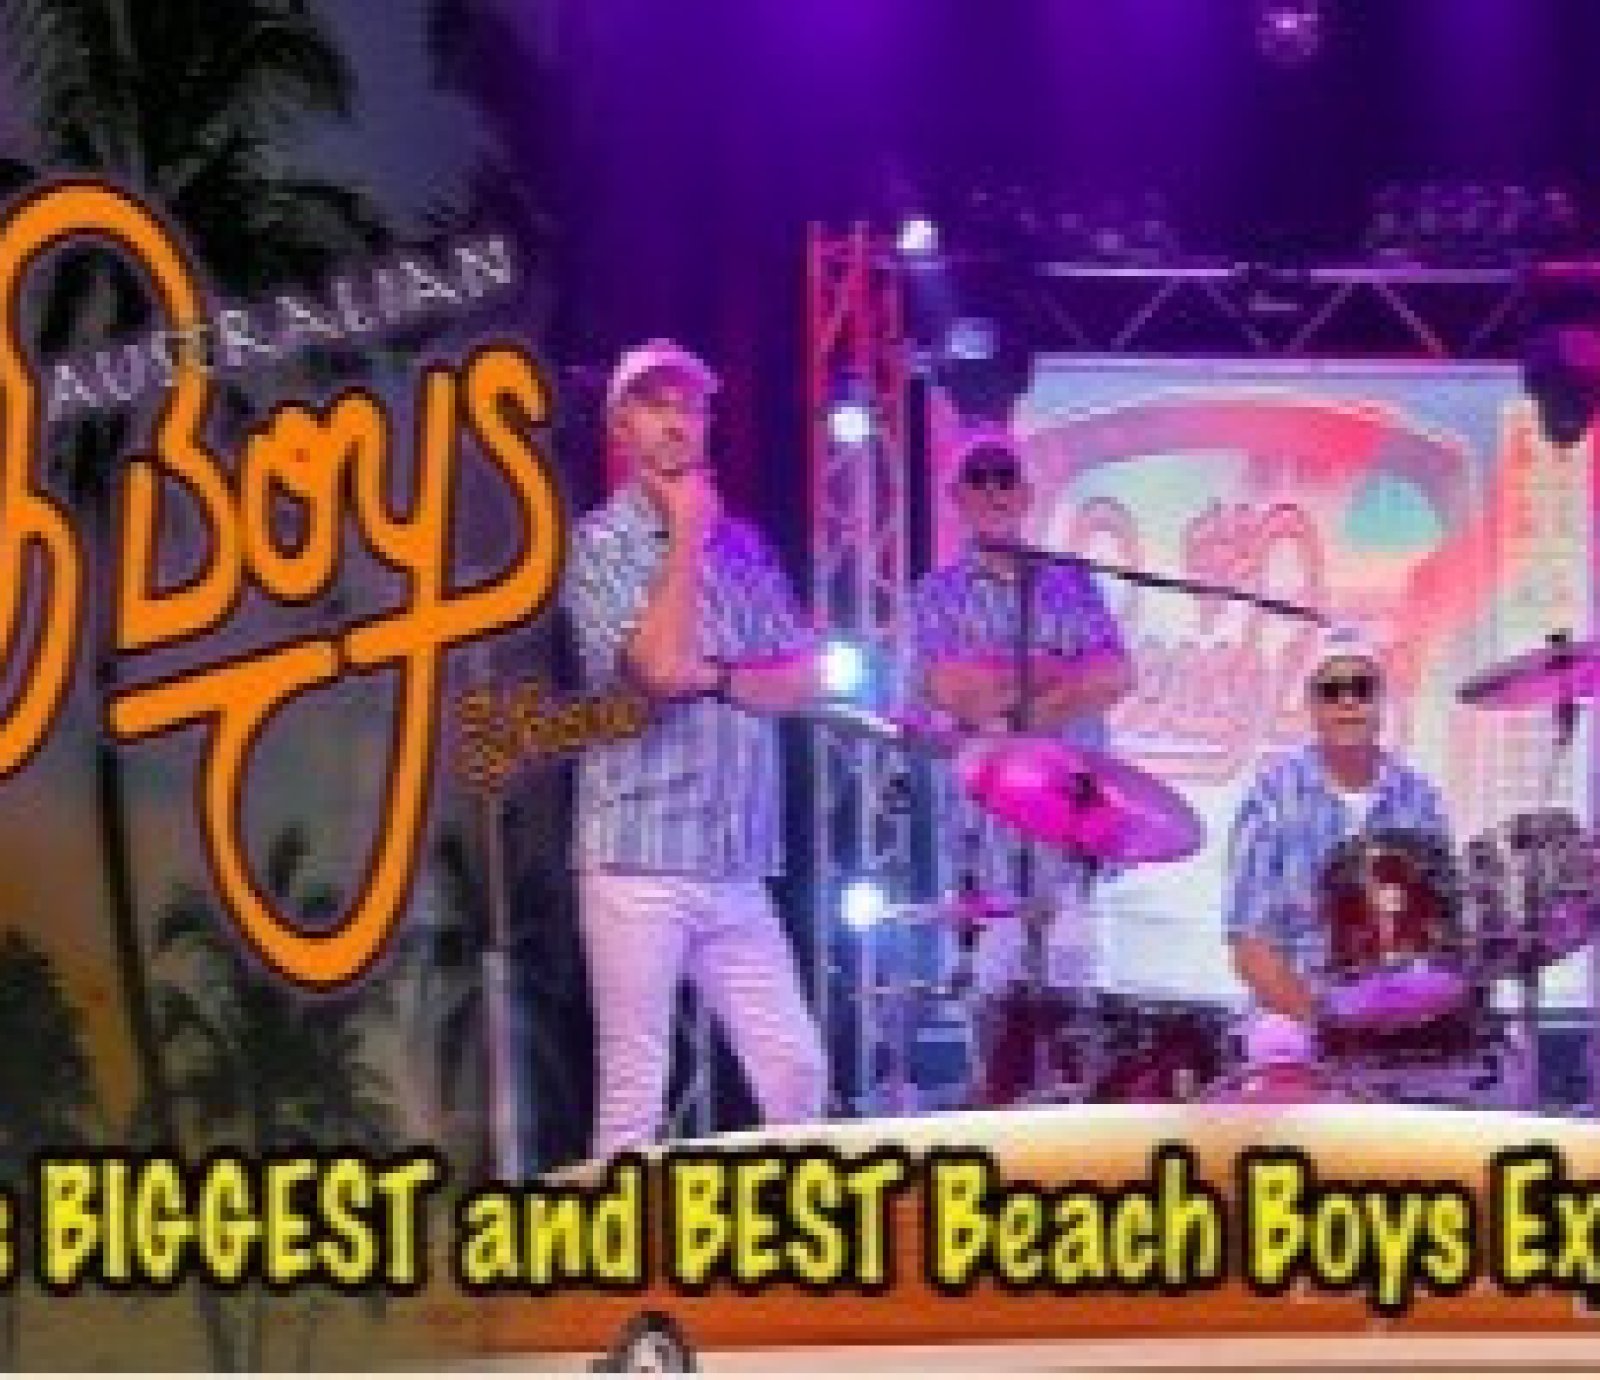 The Australian Beach Boys